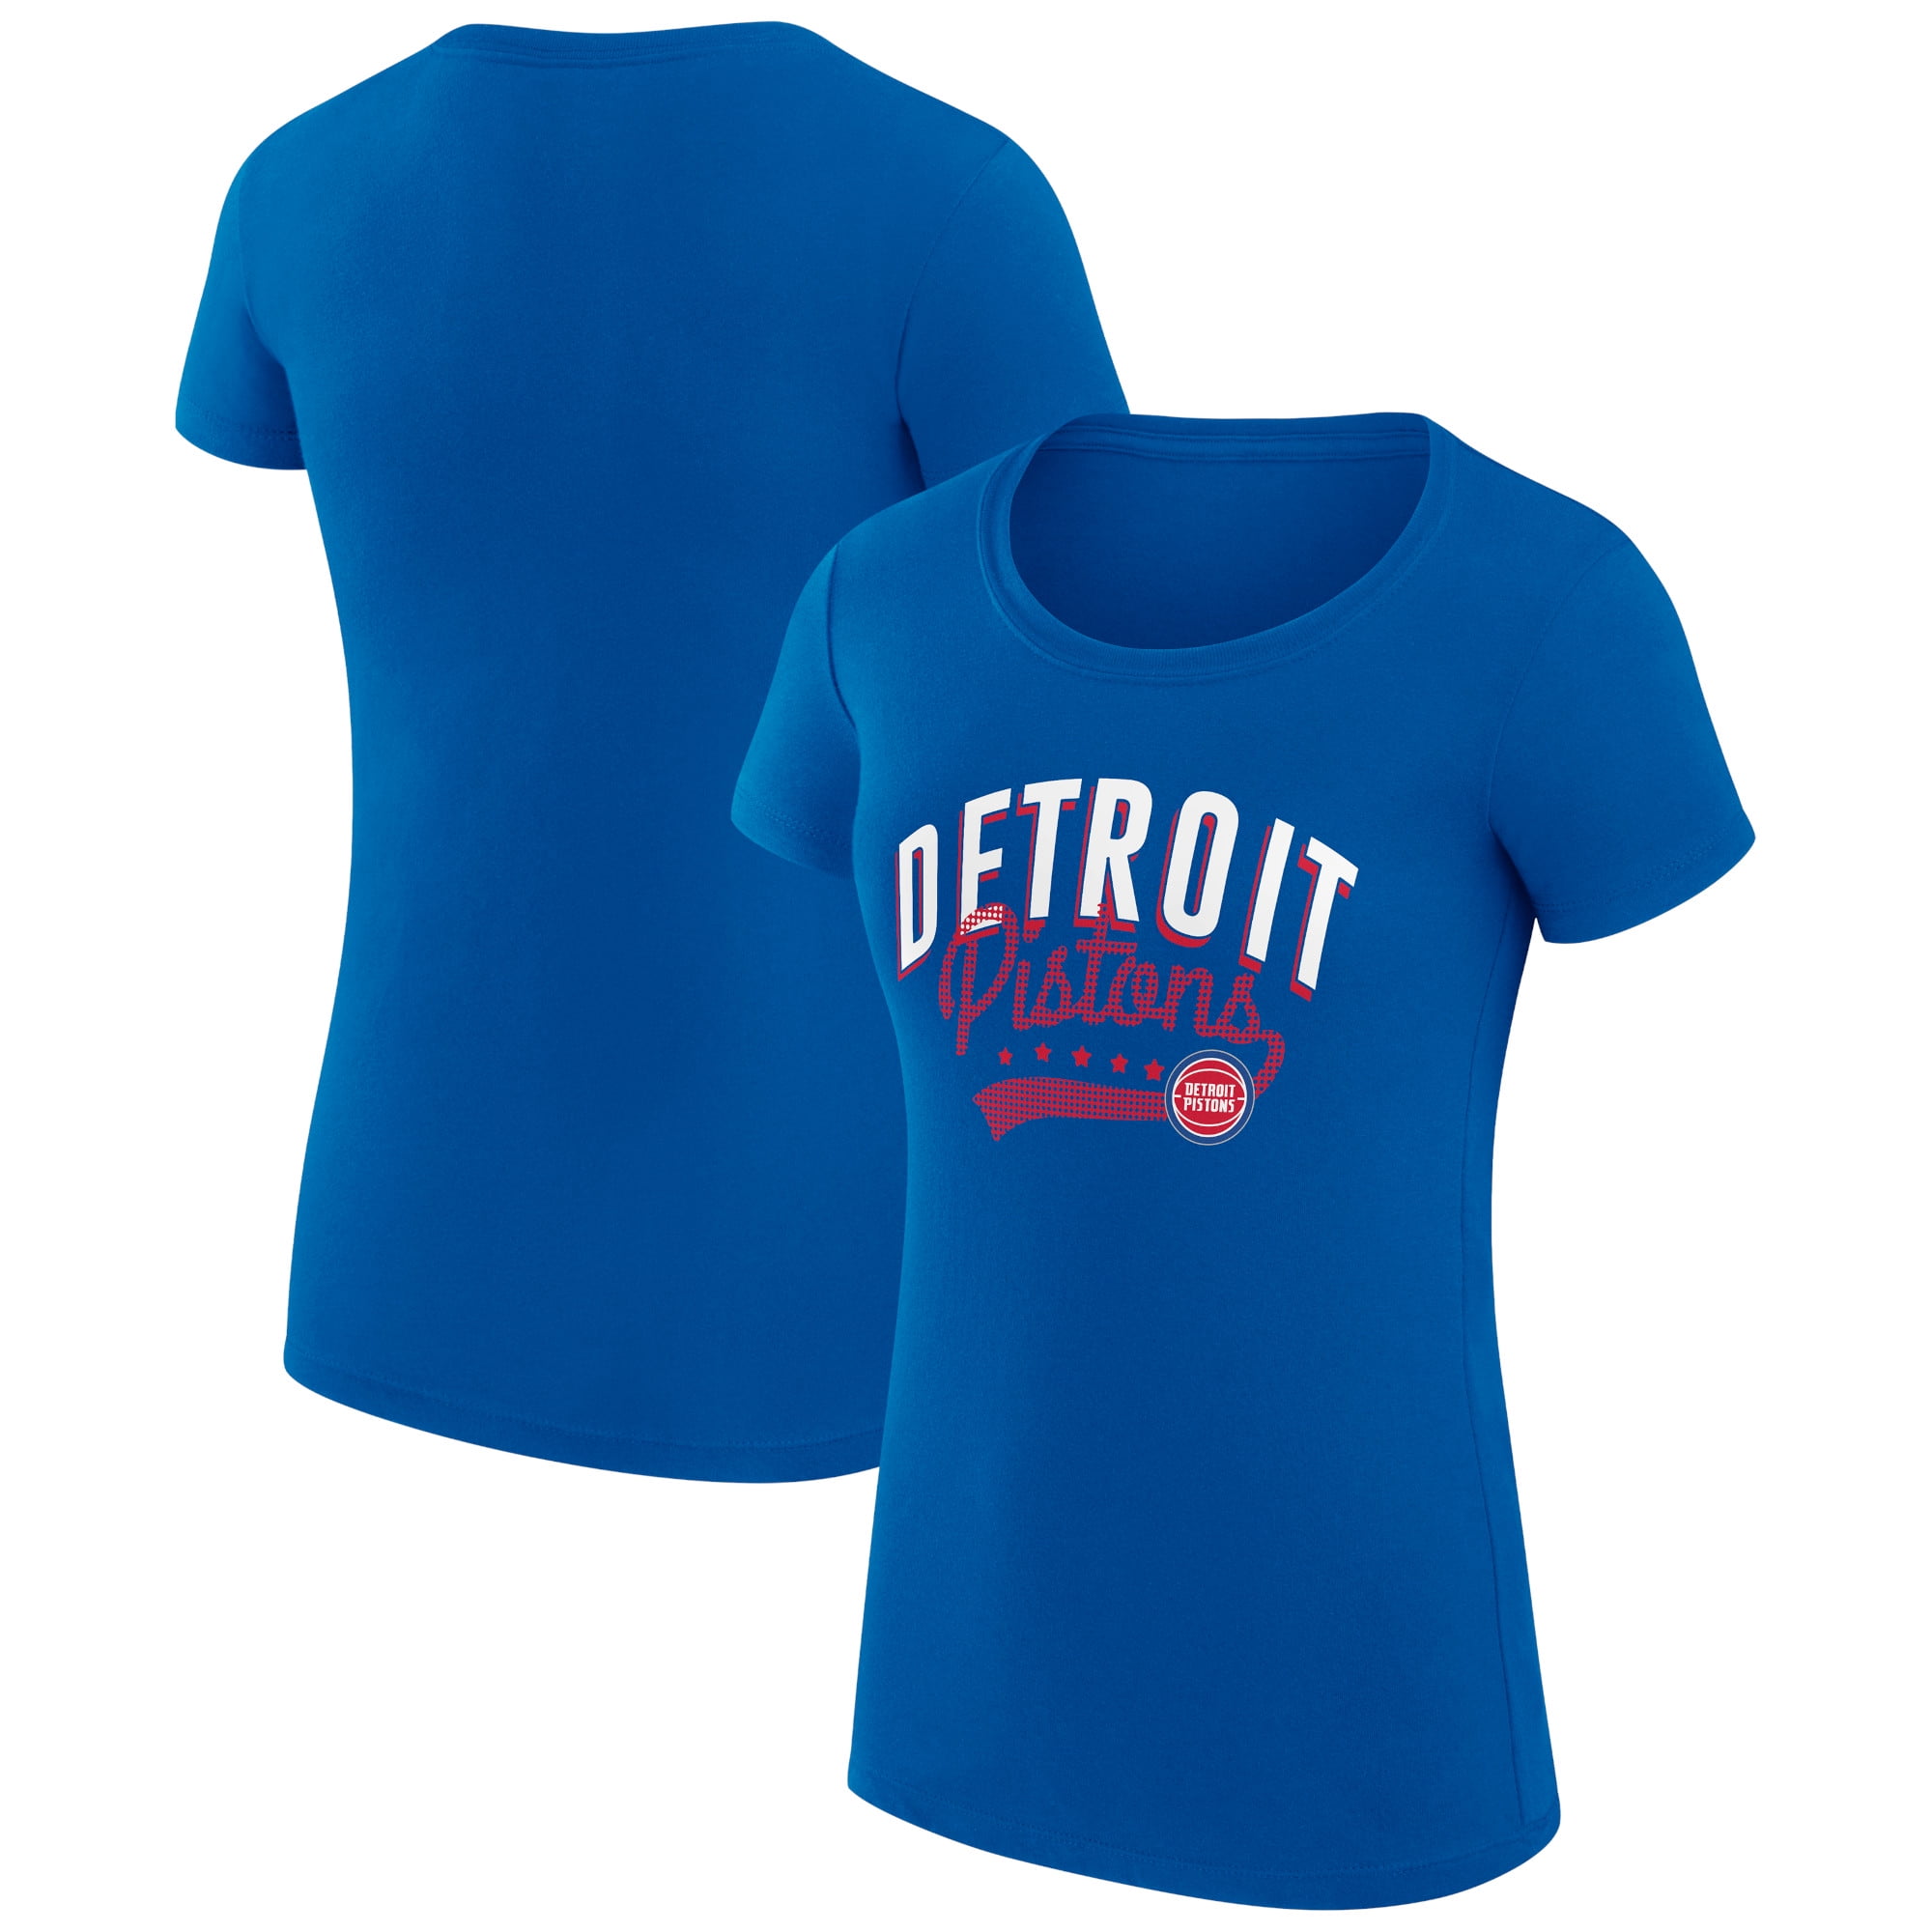 Detroit Pistons T-Shirts in Detroit Pistons Team Shop - Walmart.com